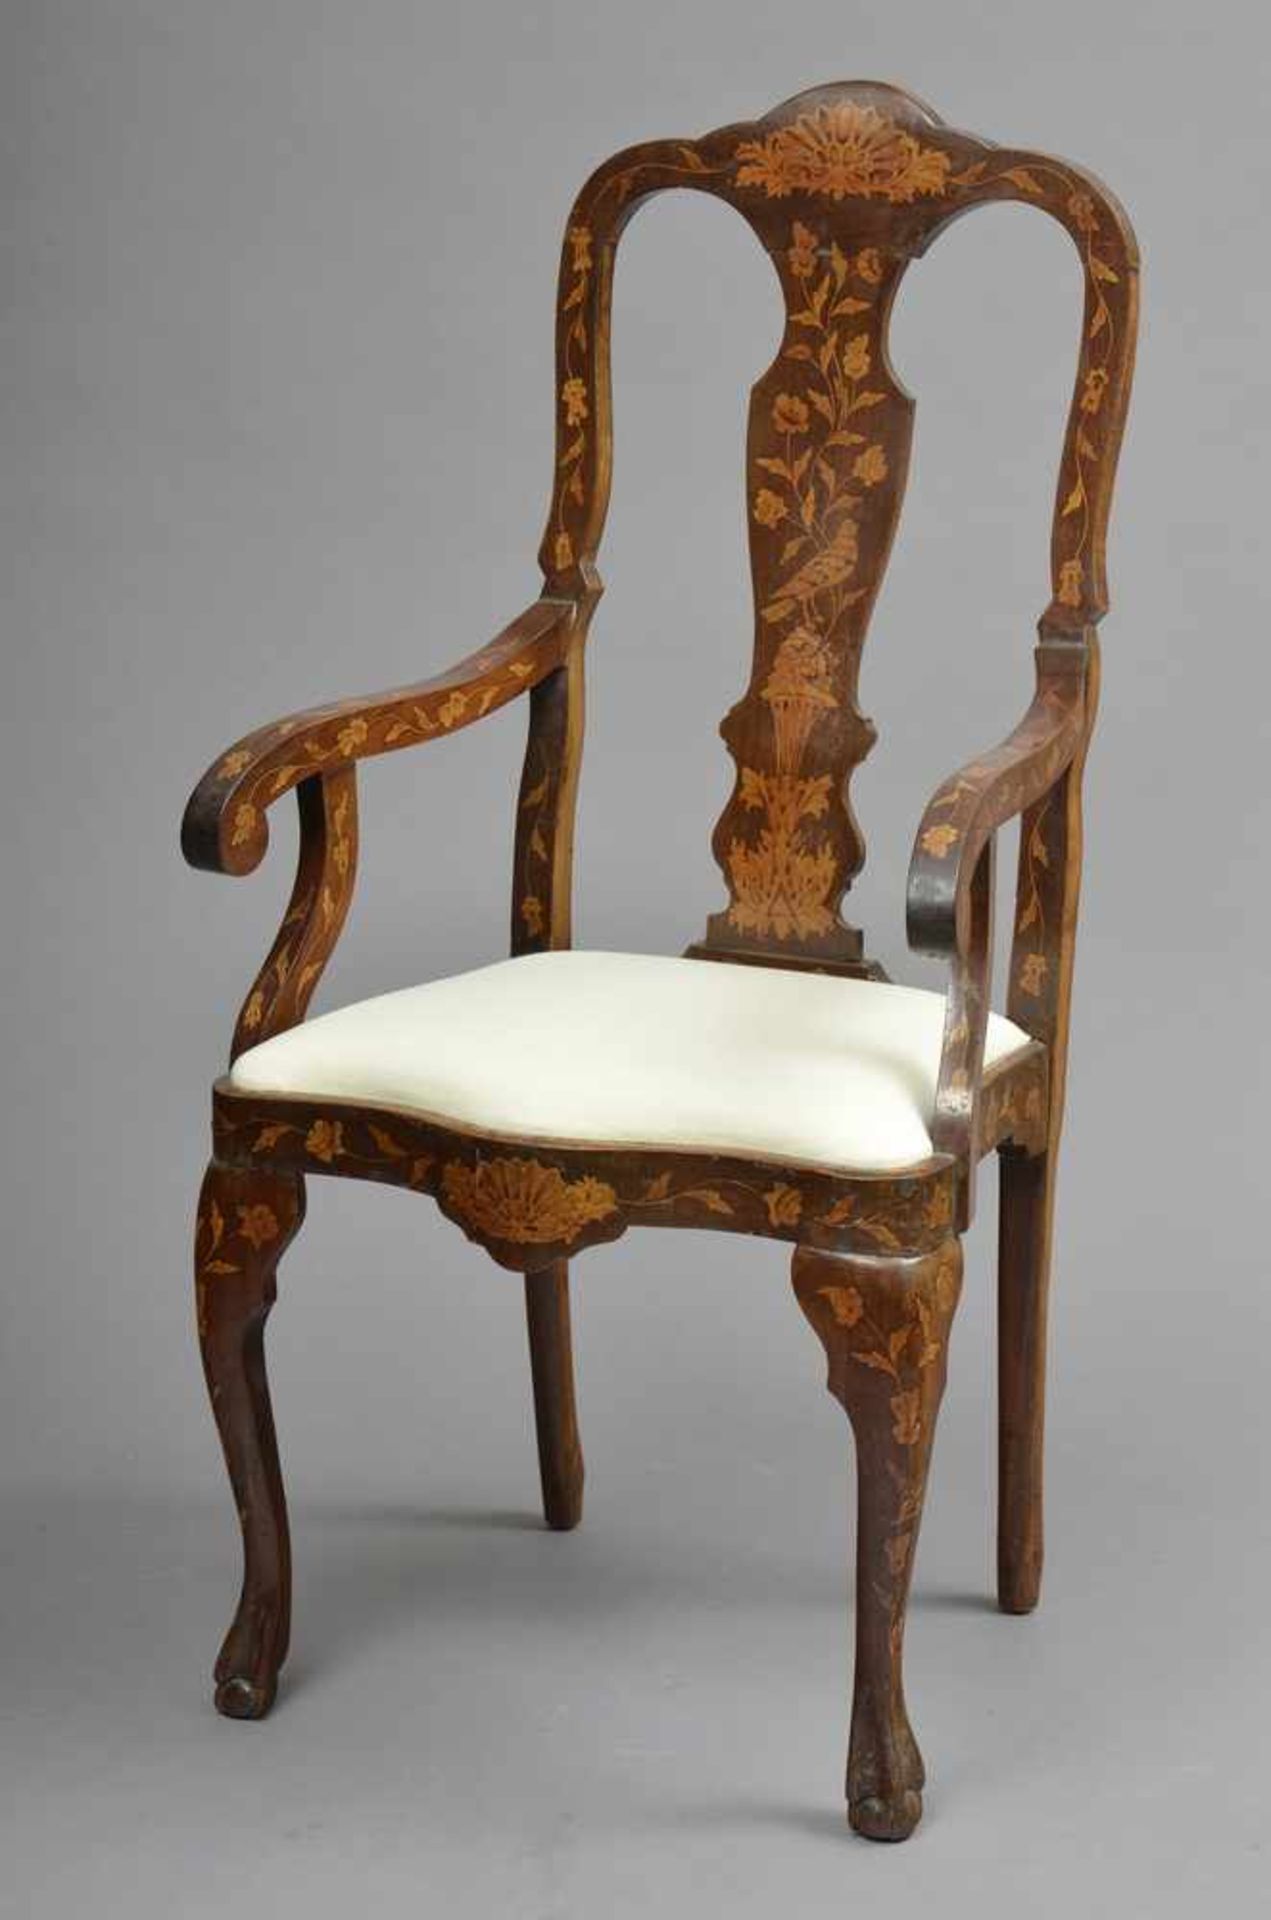 2 Holländische Stühle, Mahagoni mit floralen Intarsien aus Wurzelholz, 19.Jh., H. 115/50cm